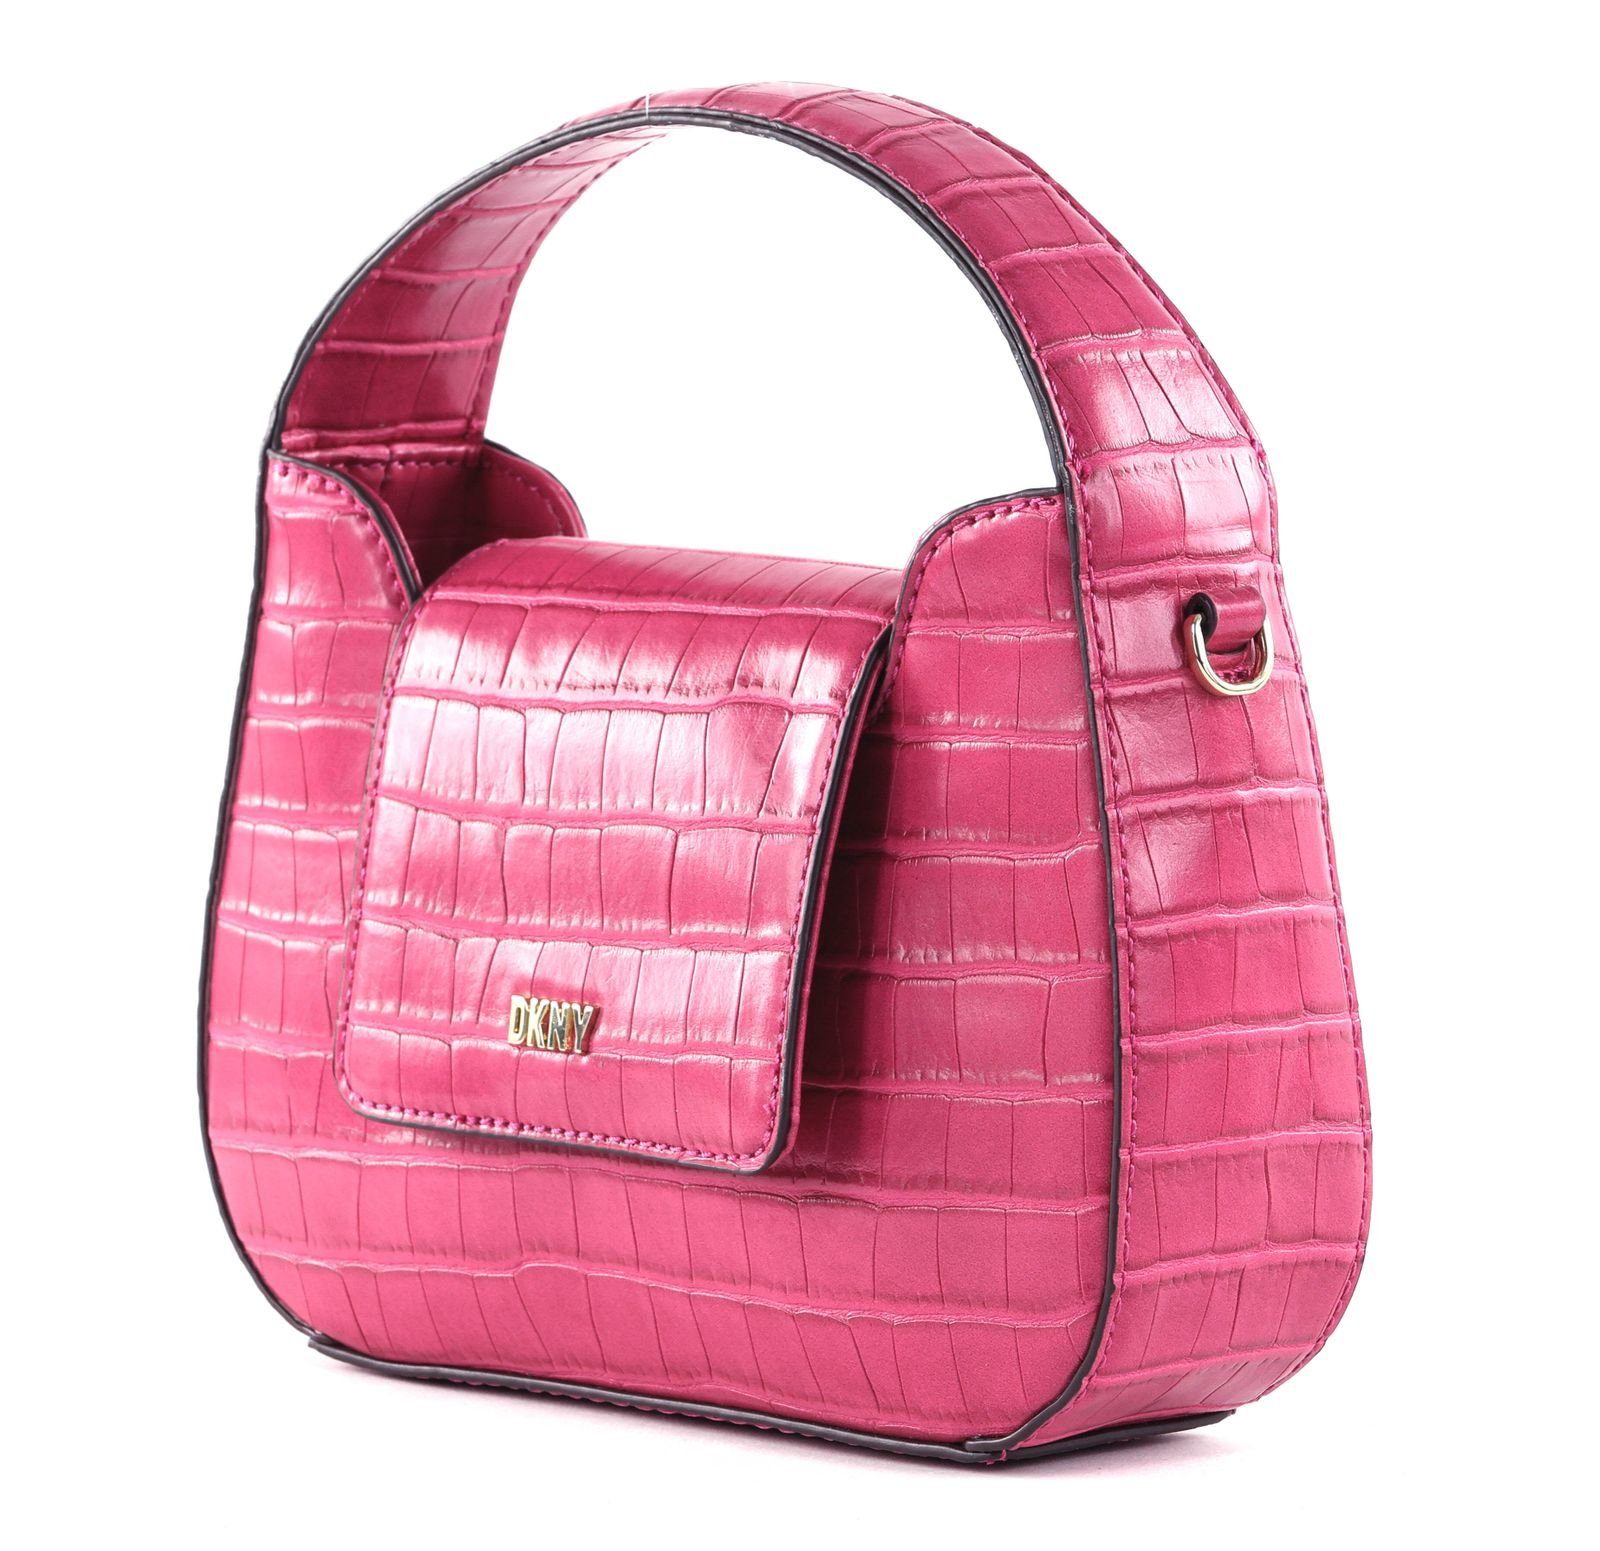 Arden Pink DKNY Handtasche